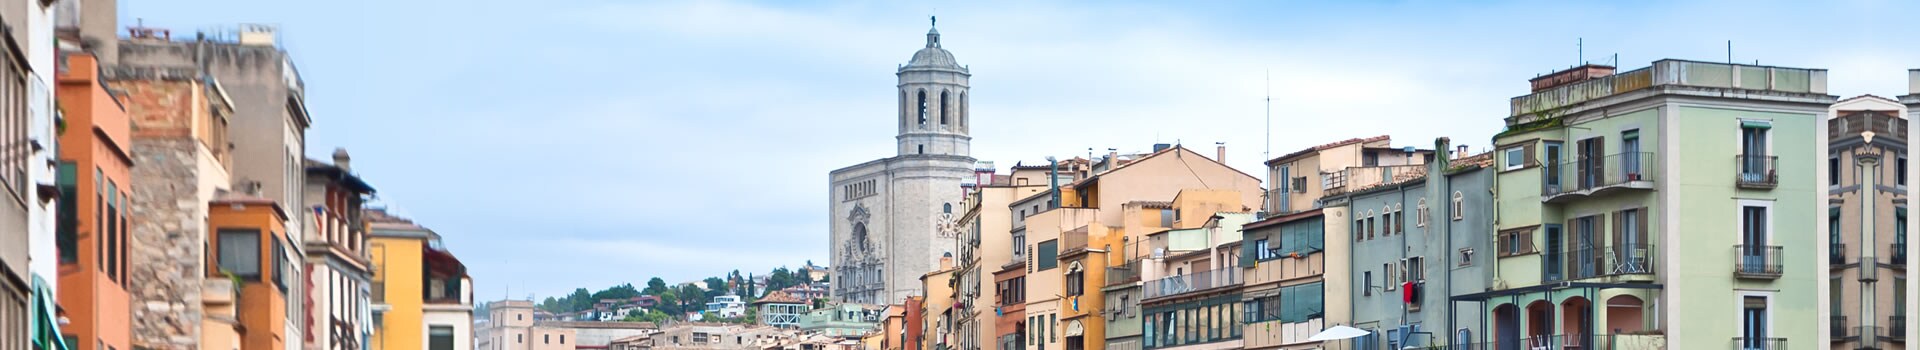 Bari - Girona